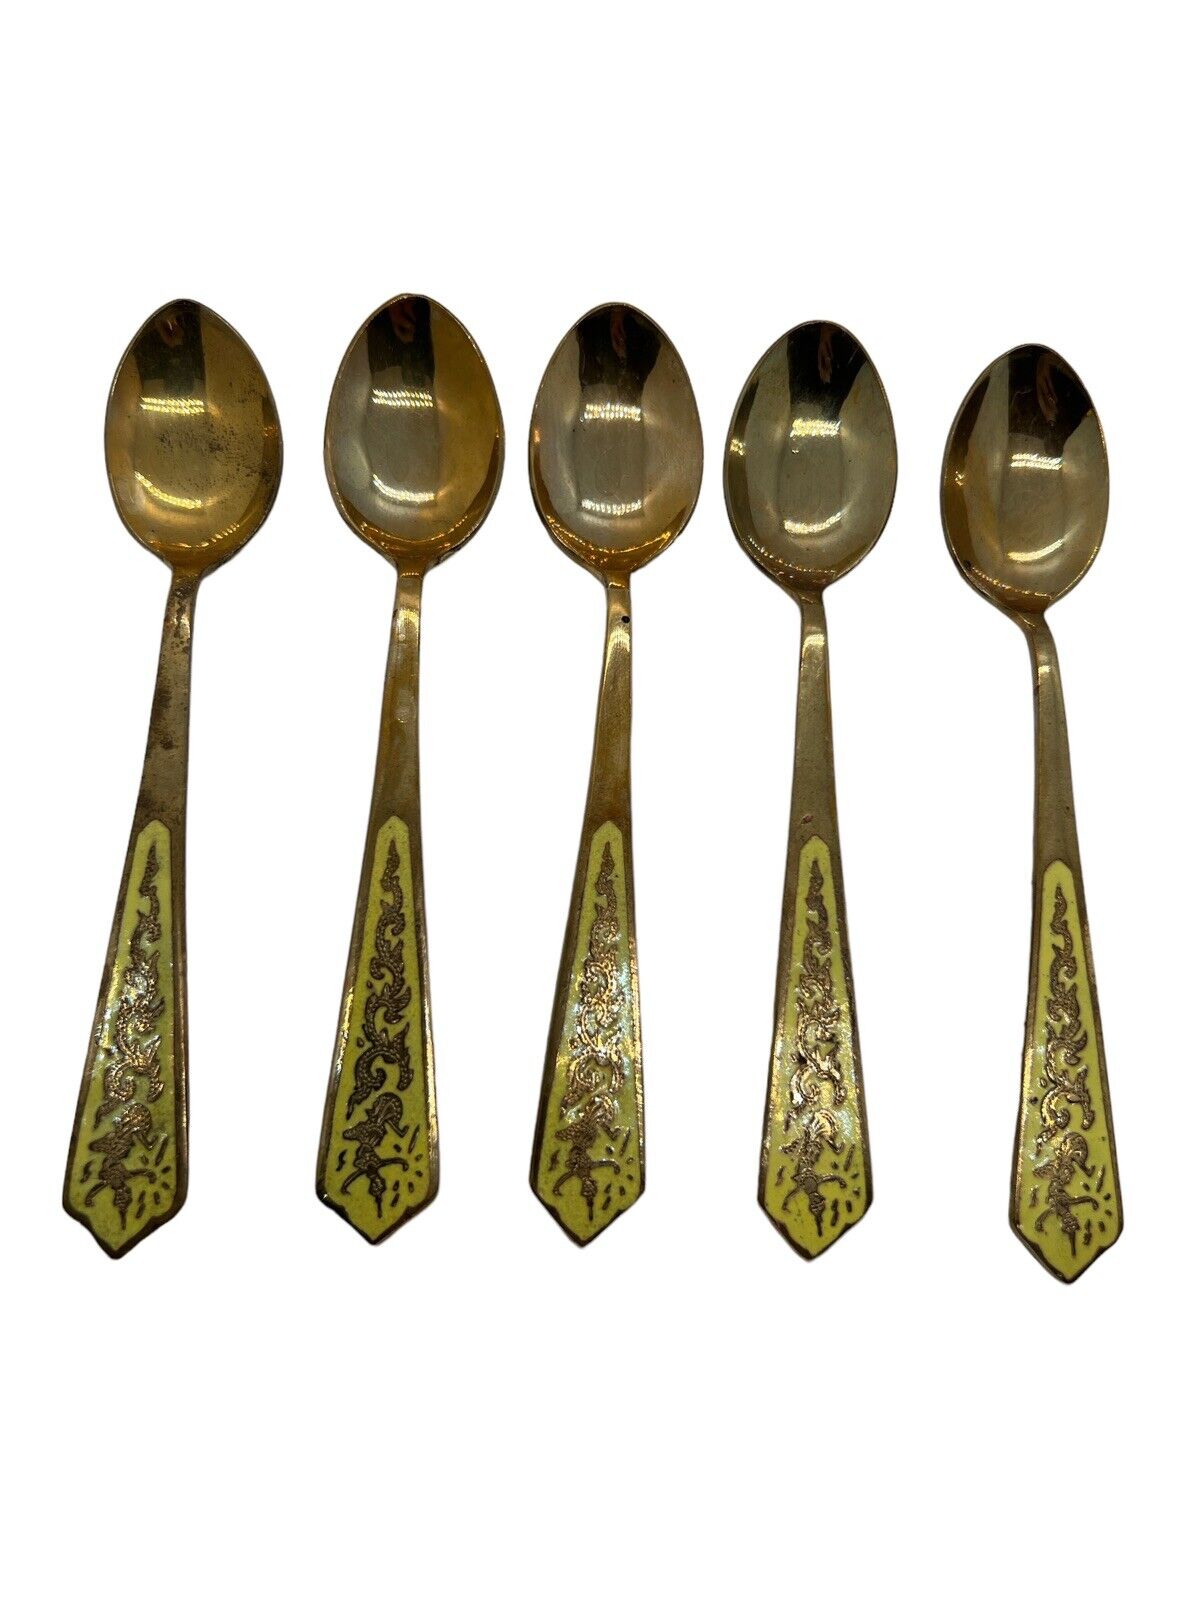 Vintage Set of 5 Thailand Boonyasilp Brass & Enamel Teaspoons 5in Demitasse